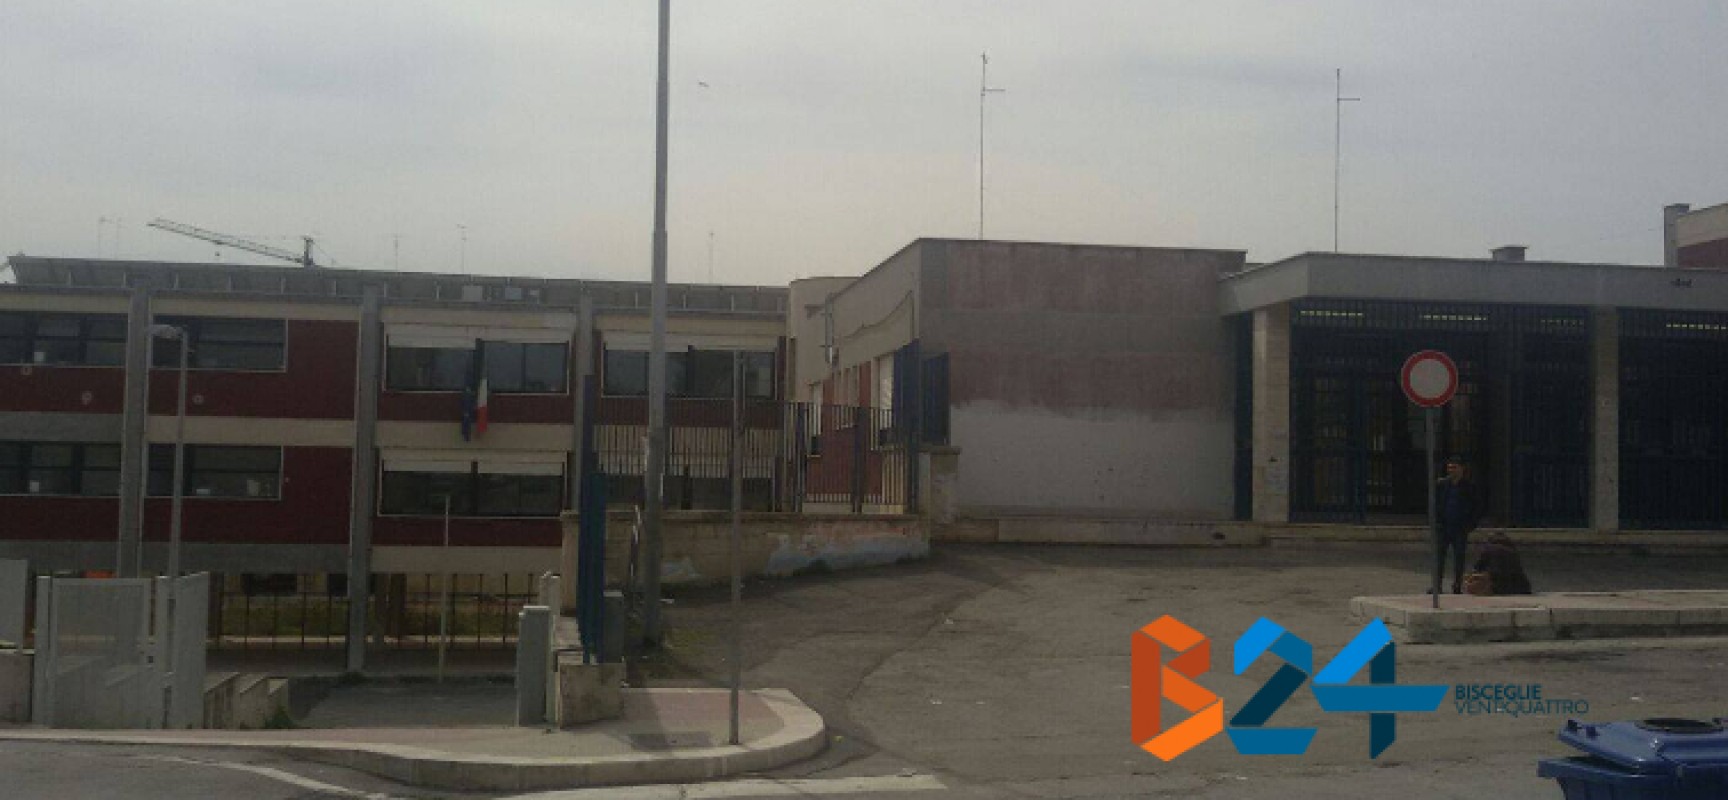 Miglioramento sismico e ampliamento della scuola “Don Pasquale Uva”, firmato il disciplinare